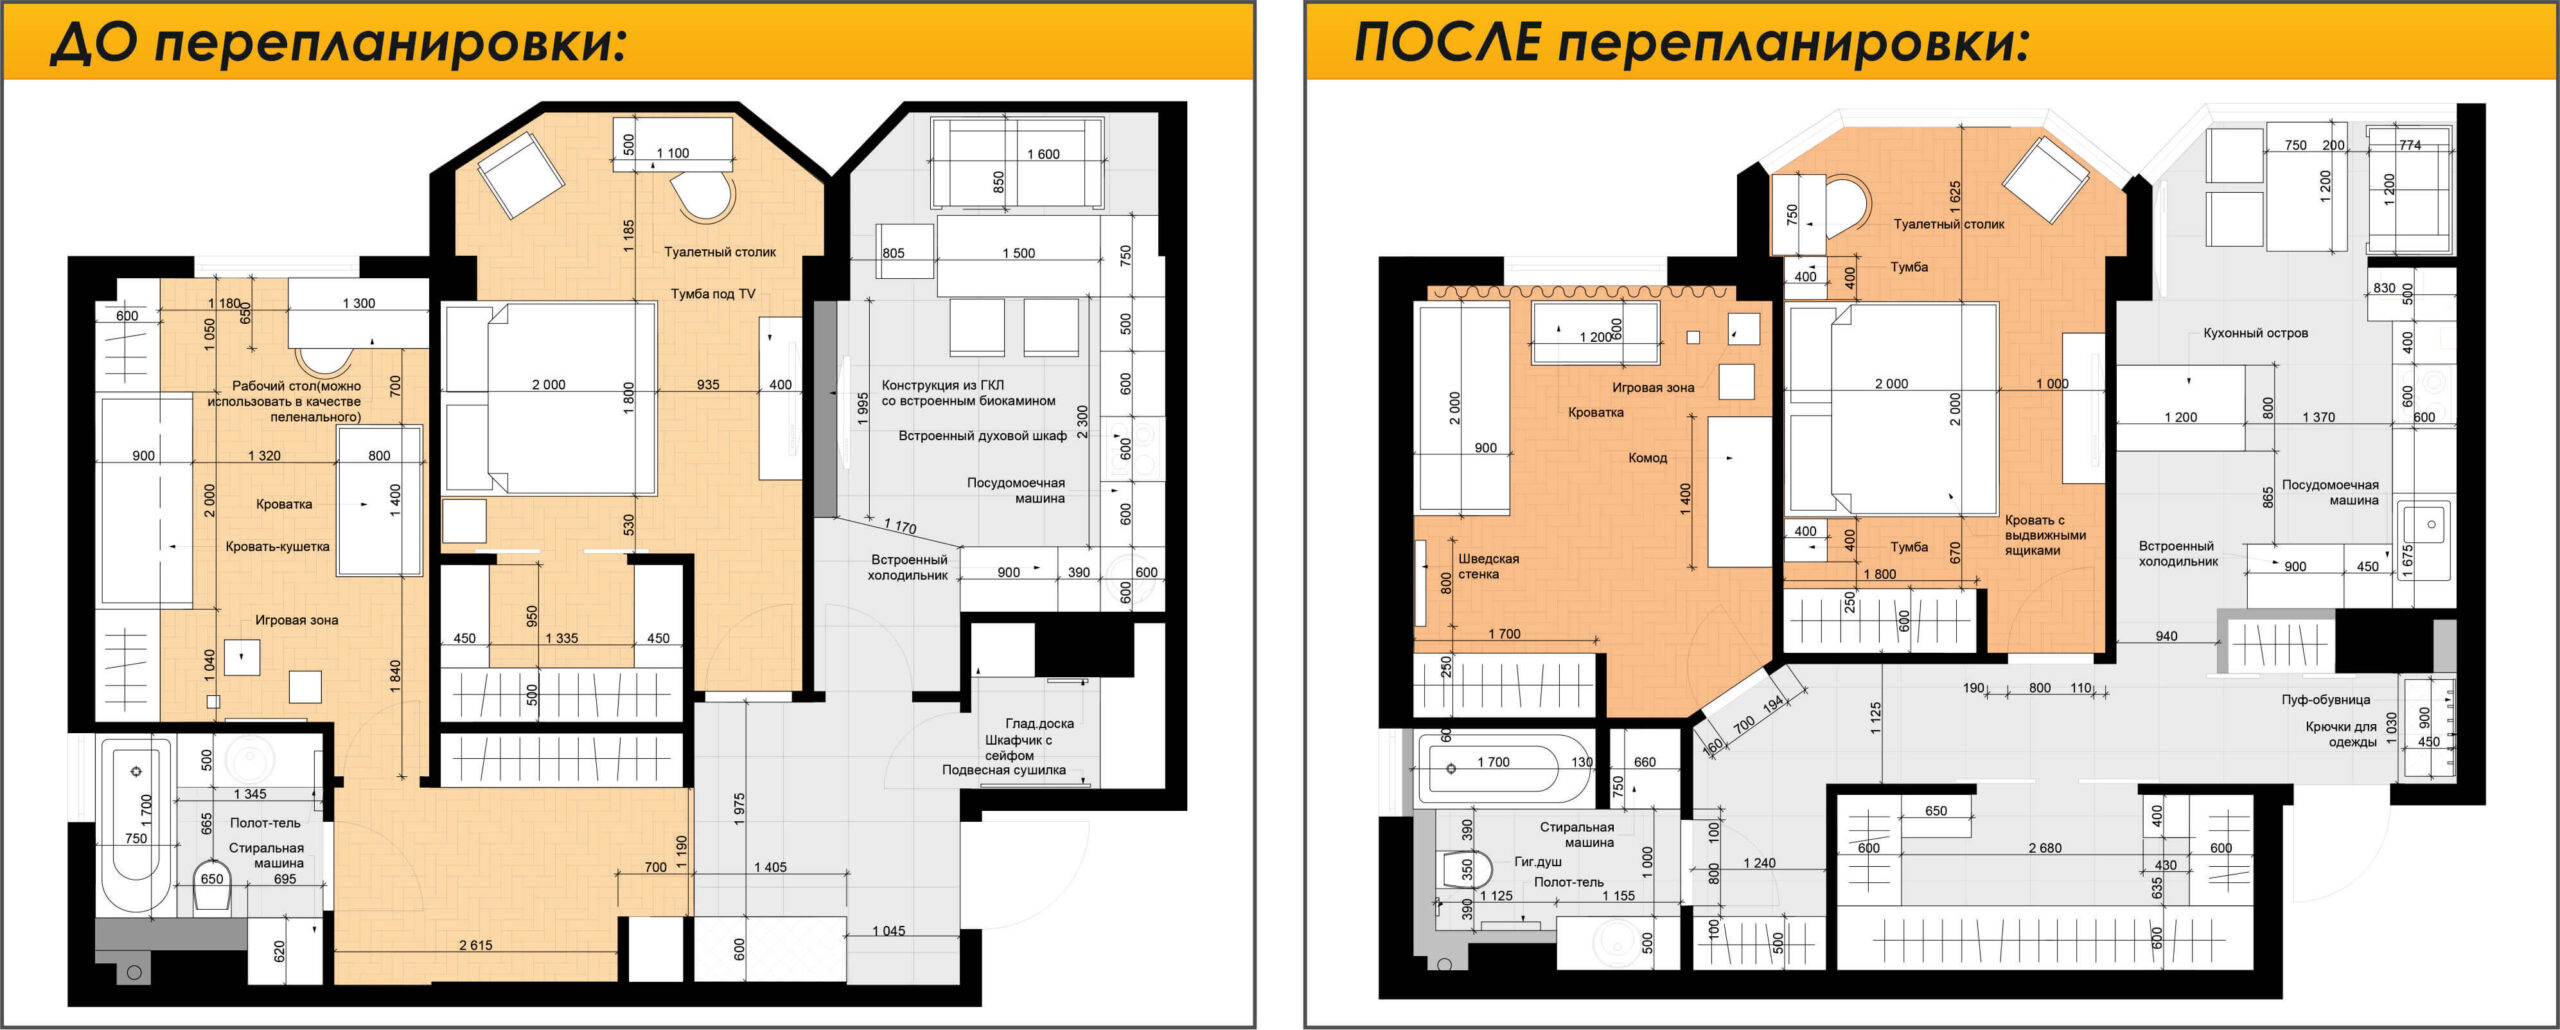 Перепланировка заключается в изменении конфигурации и характеристик квартиры. Перепланировку можно совместить с изменением дизайна квартиры или нежилого помещения